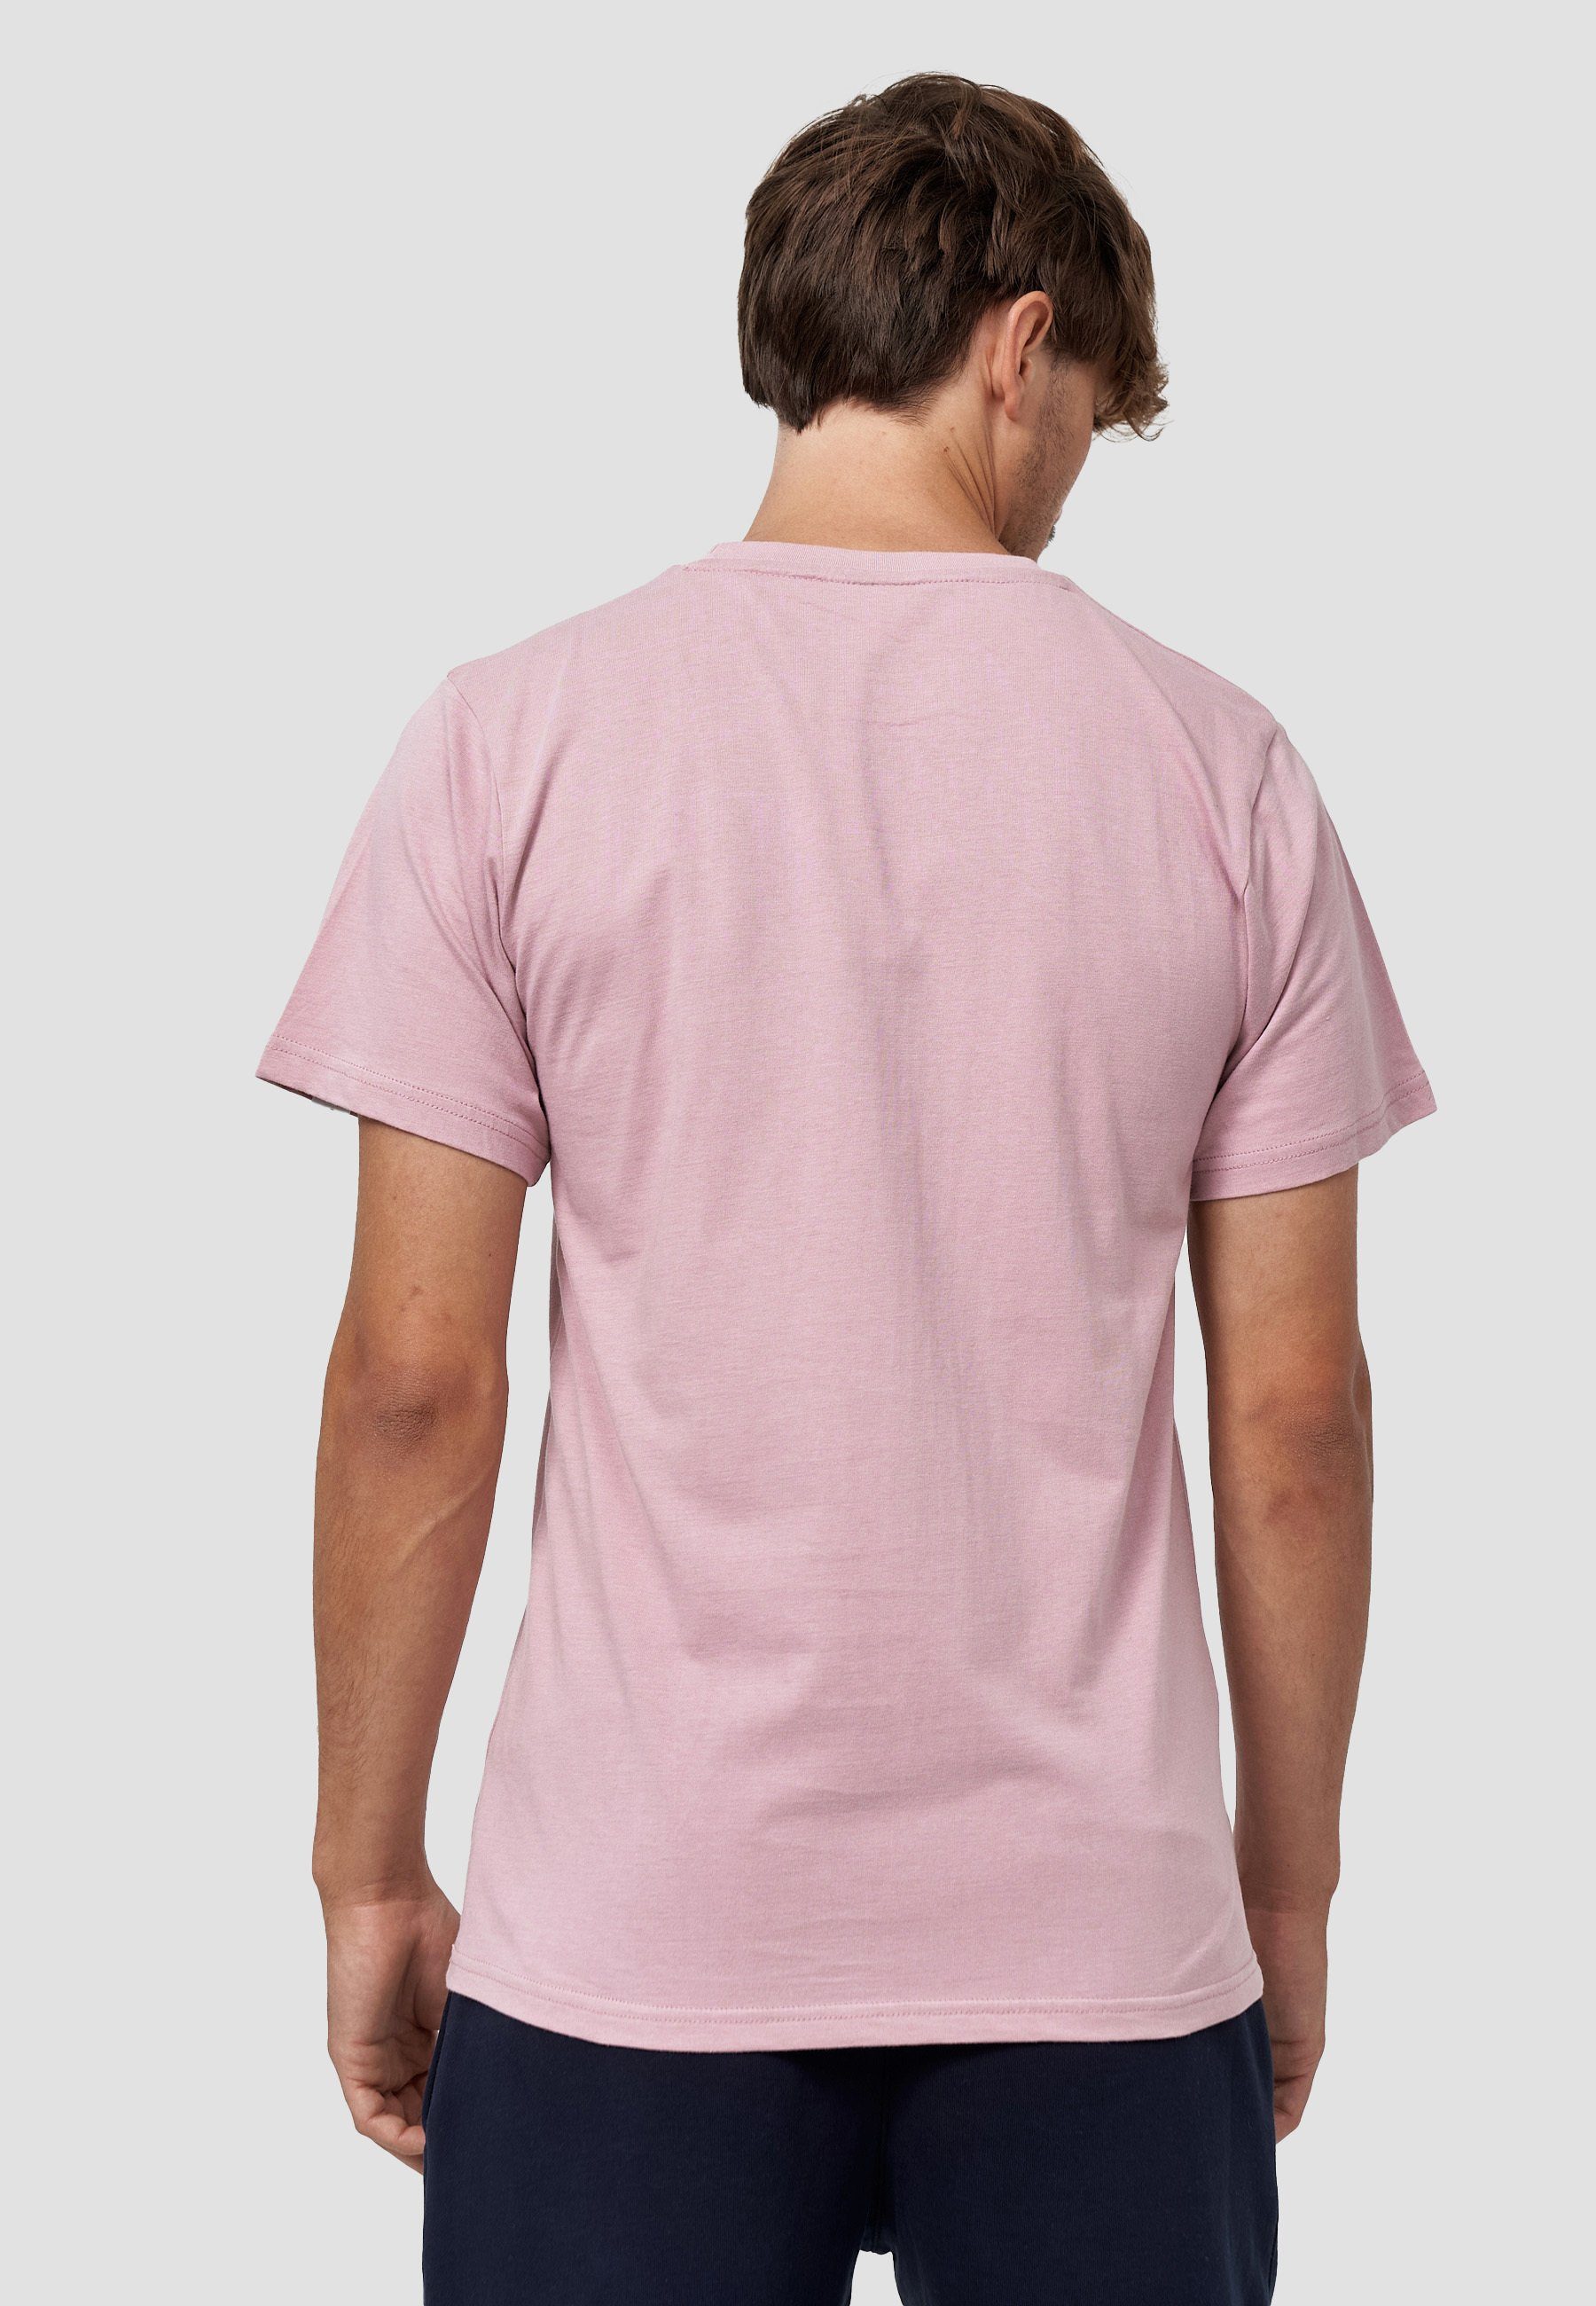 Bio-Baumwolle MIKON Pink T-Shirt GOTS Feder zertifizierte